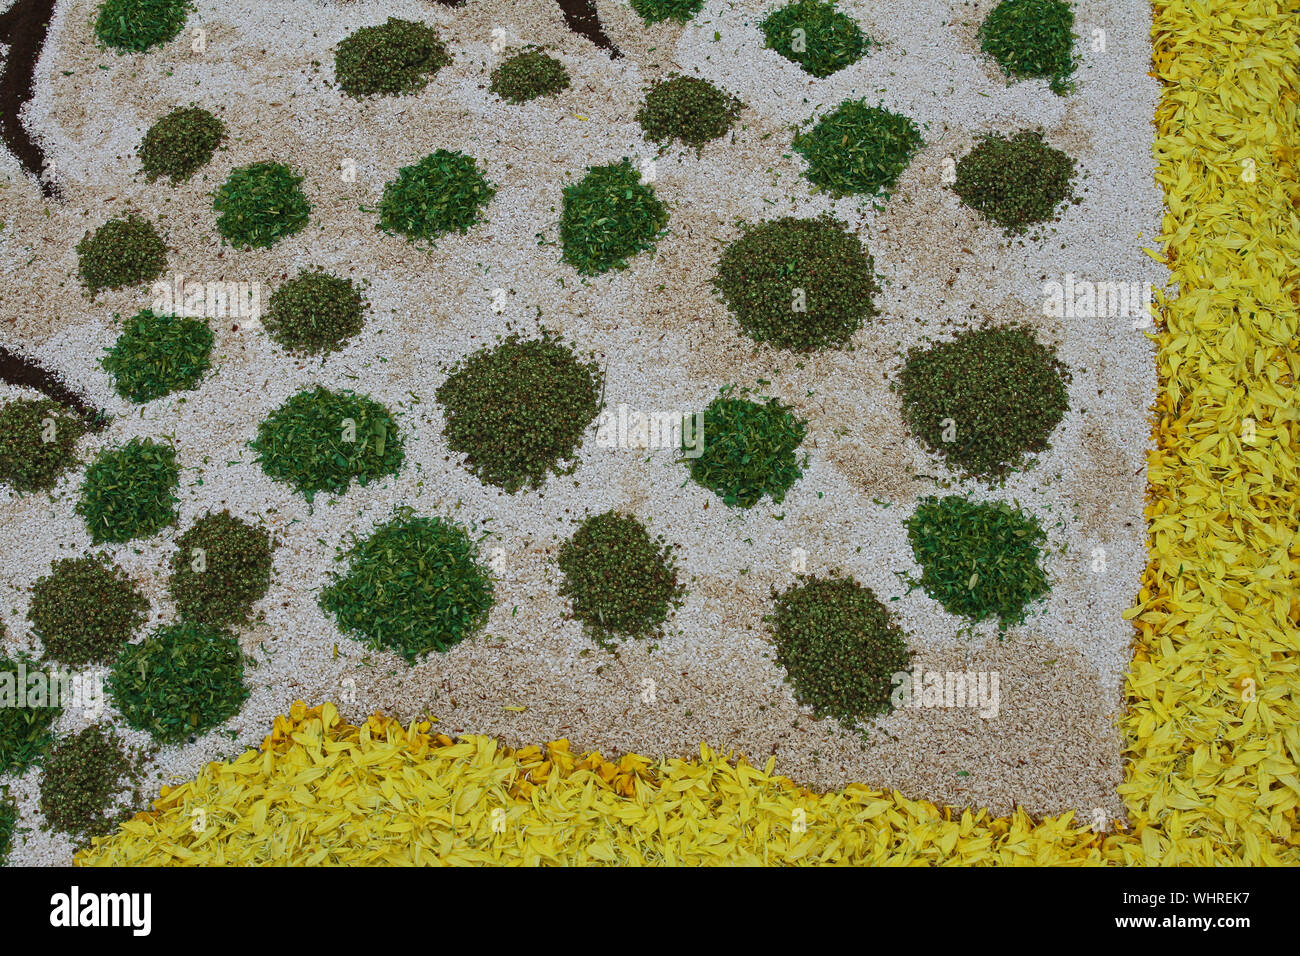 Blütenblätter, Getreide, Reis, Bohnen und Samen bilden ein abstraktes Muster in der Kufstein in der Region Marken in Italien zu feiern Fronleichnam Stockfoto